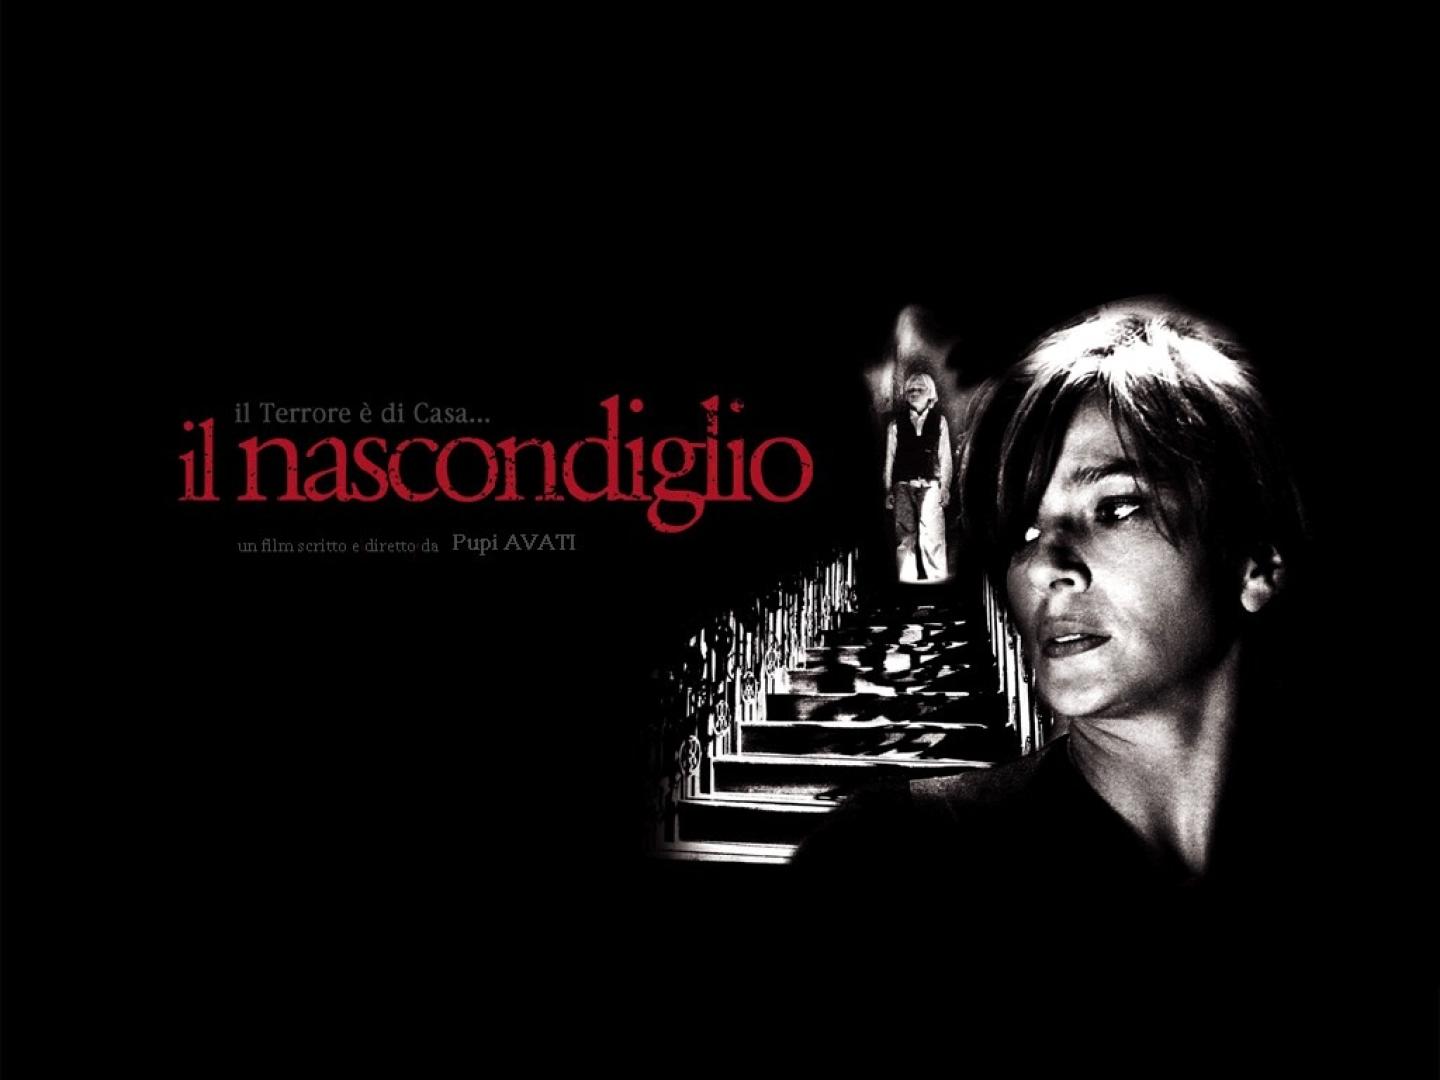 Il nascondiglio / A rejtekhely (2007)